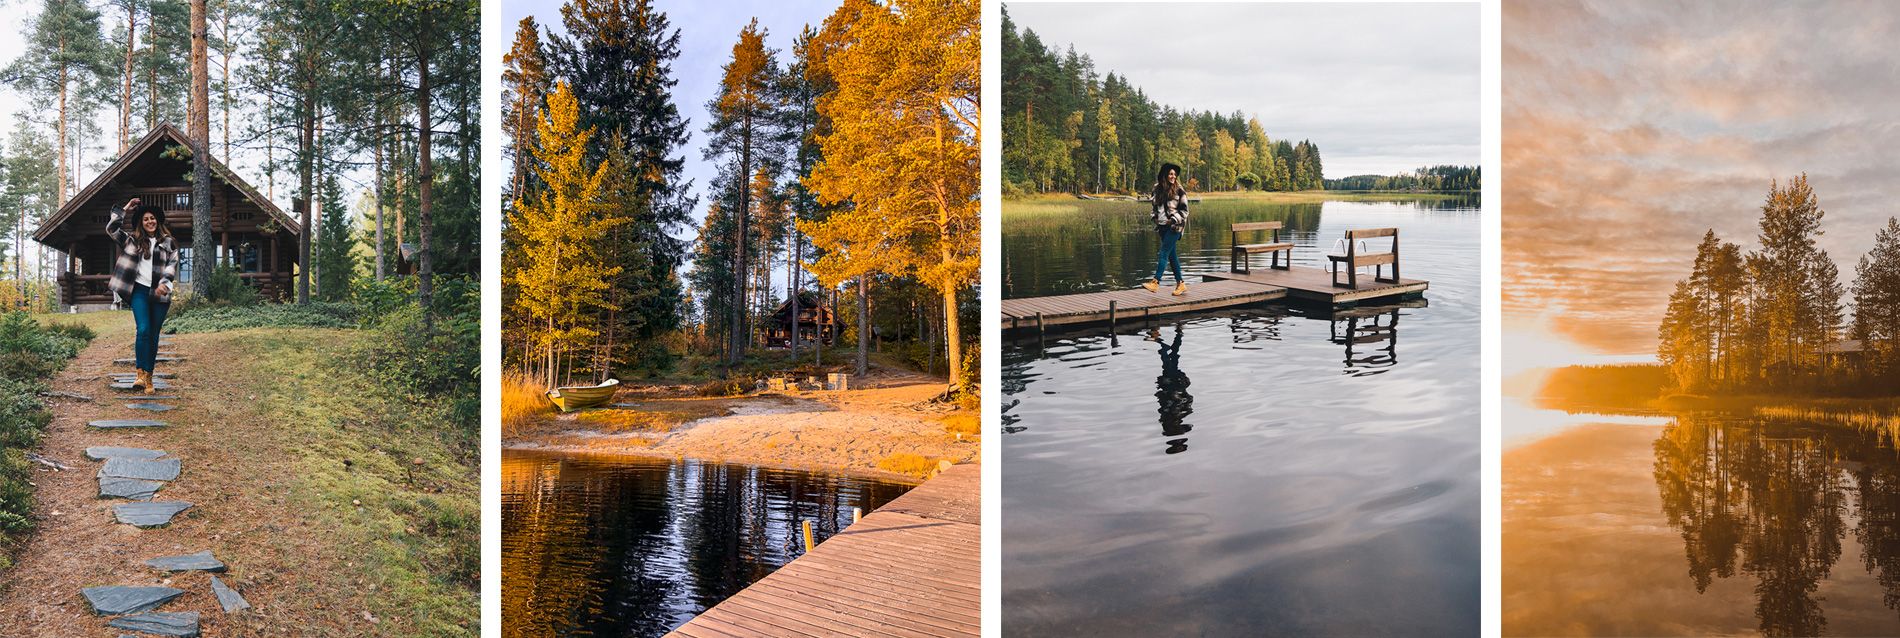 Finlande | Hotel | grands lacs